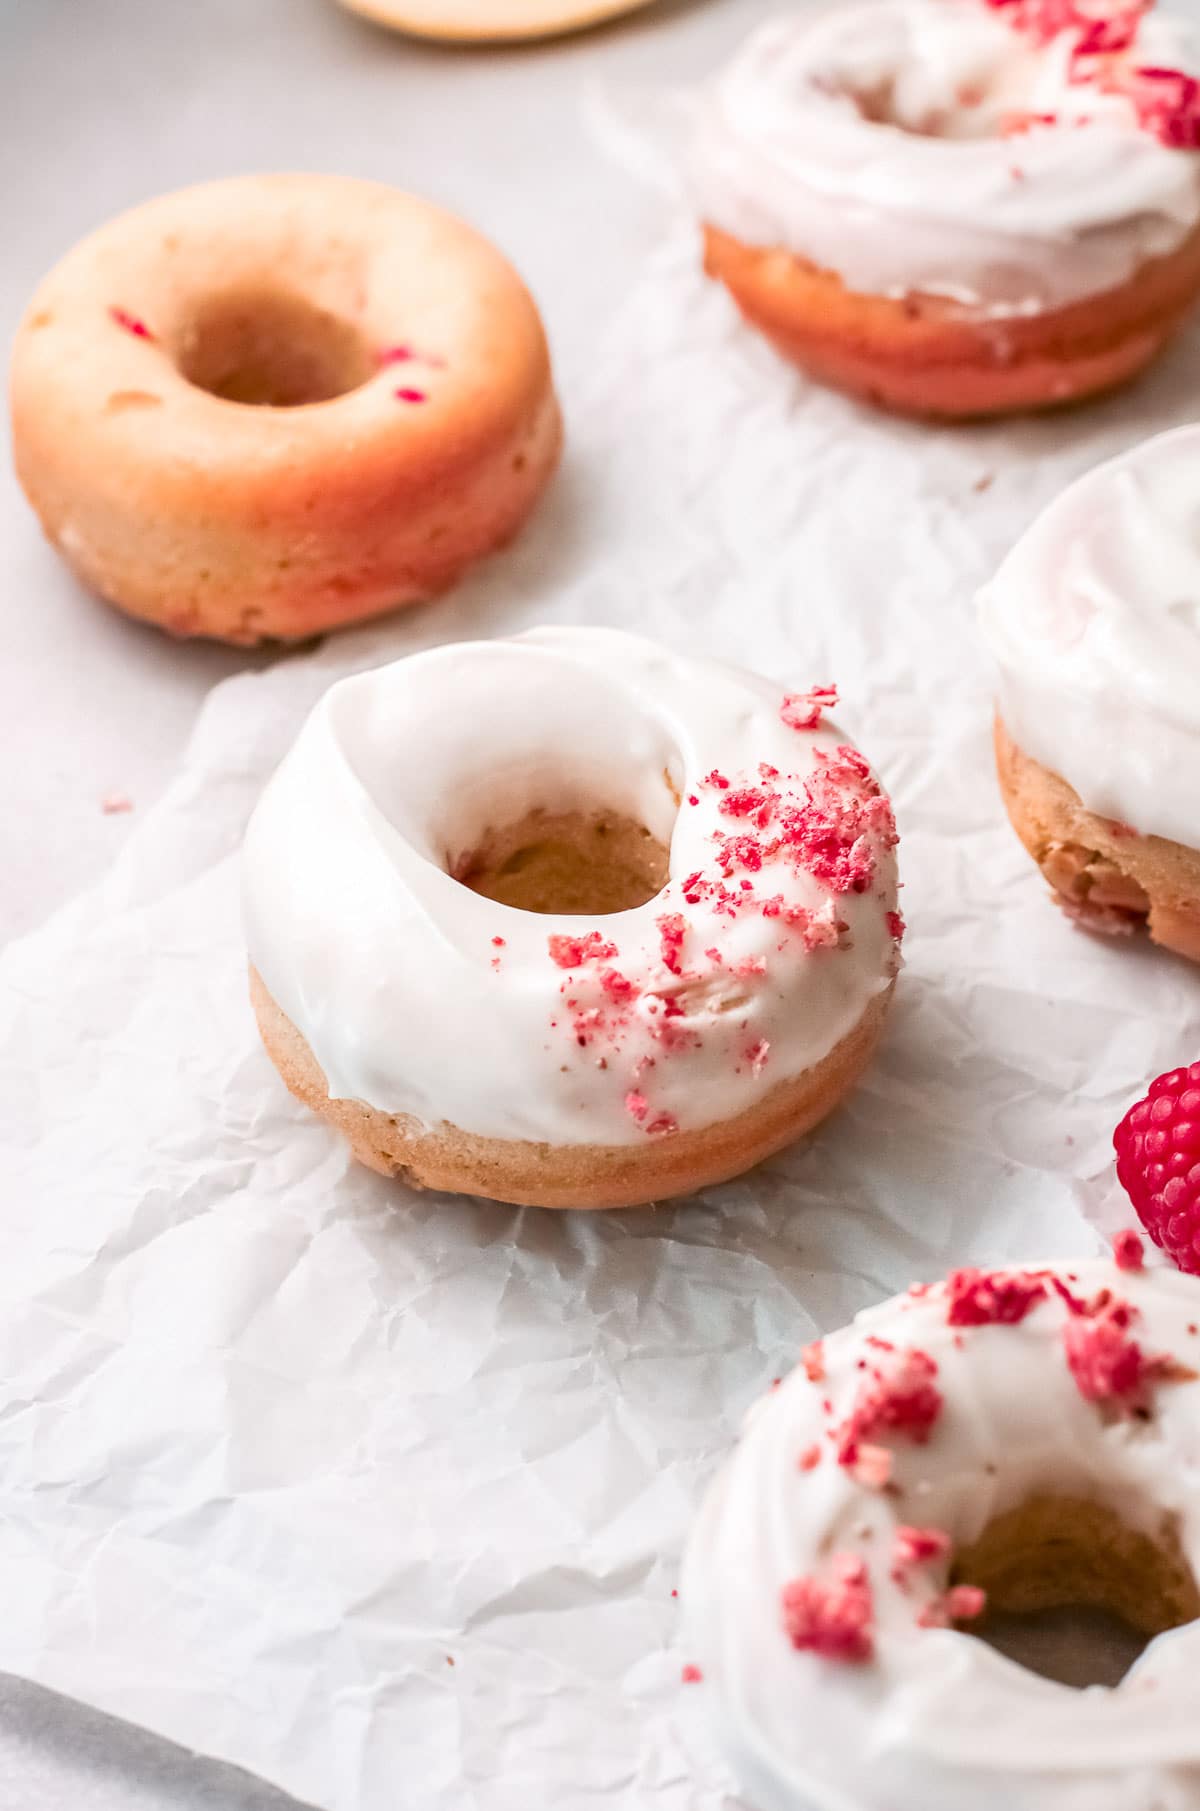 baked donuts glazed with freeze dried raspberry